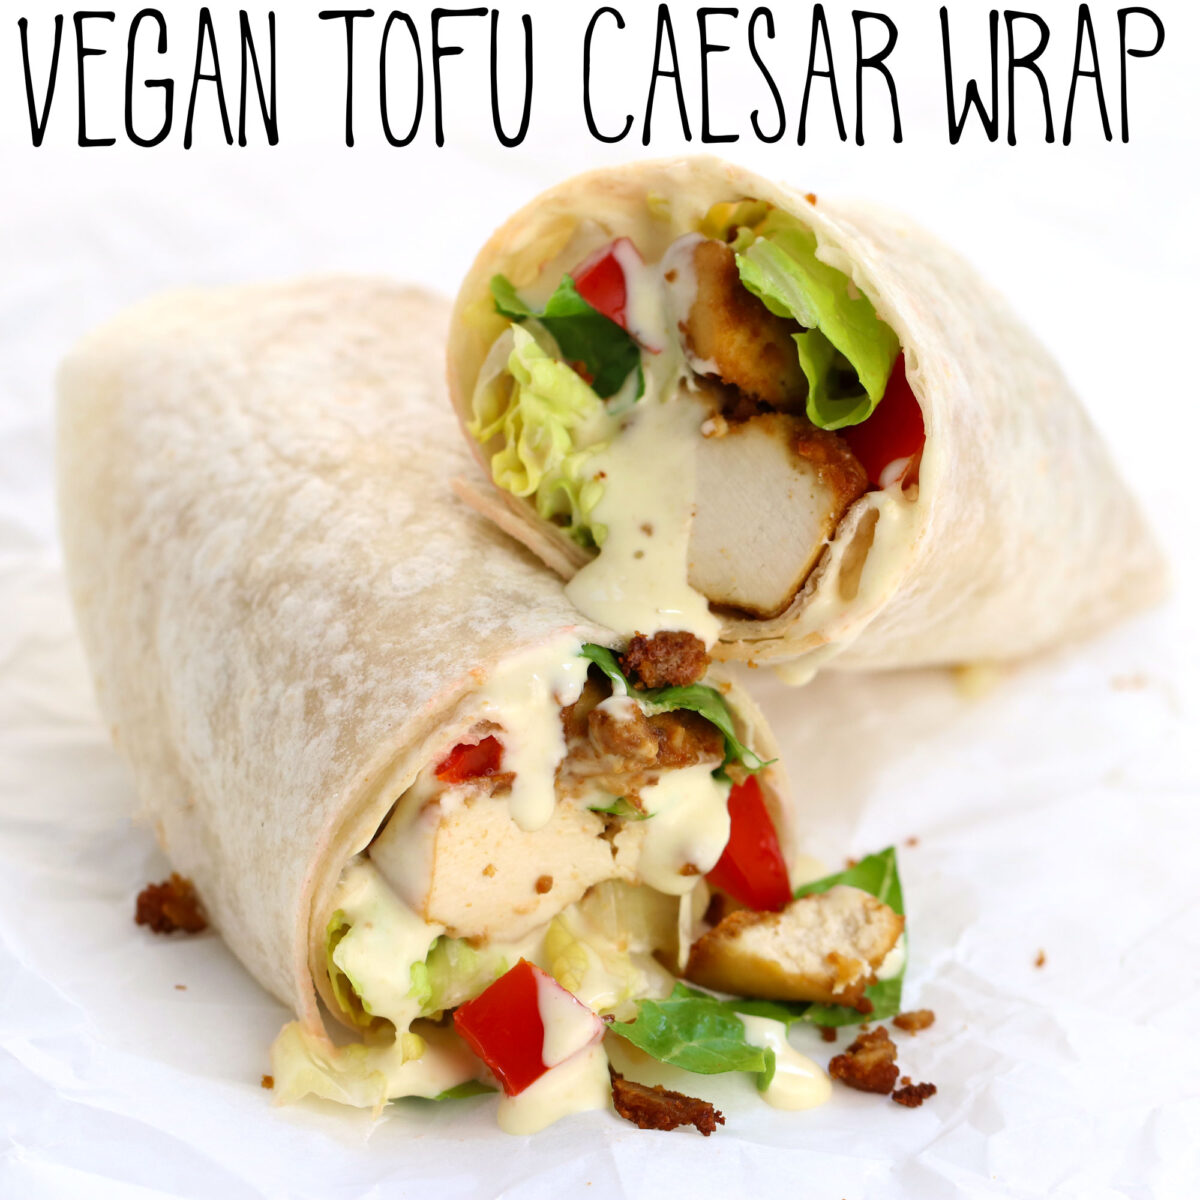 Vegan Tofu Caesar Wrap